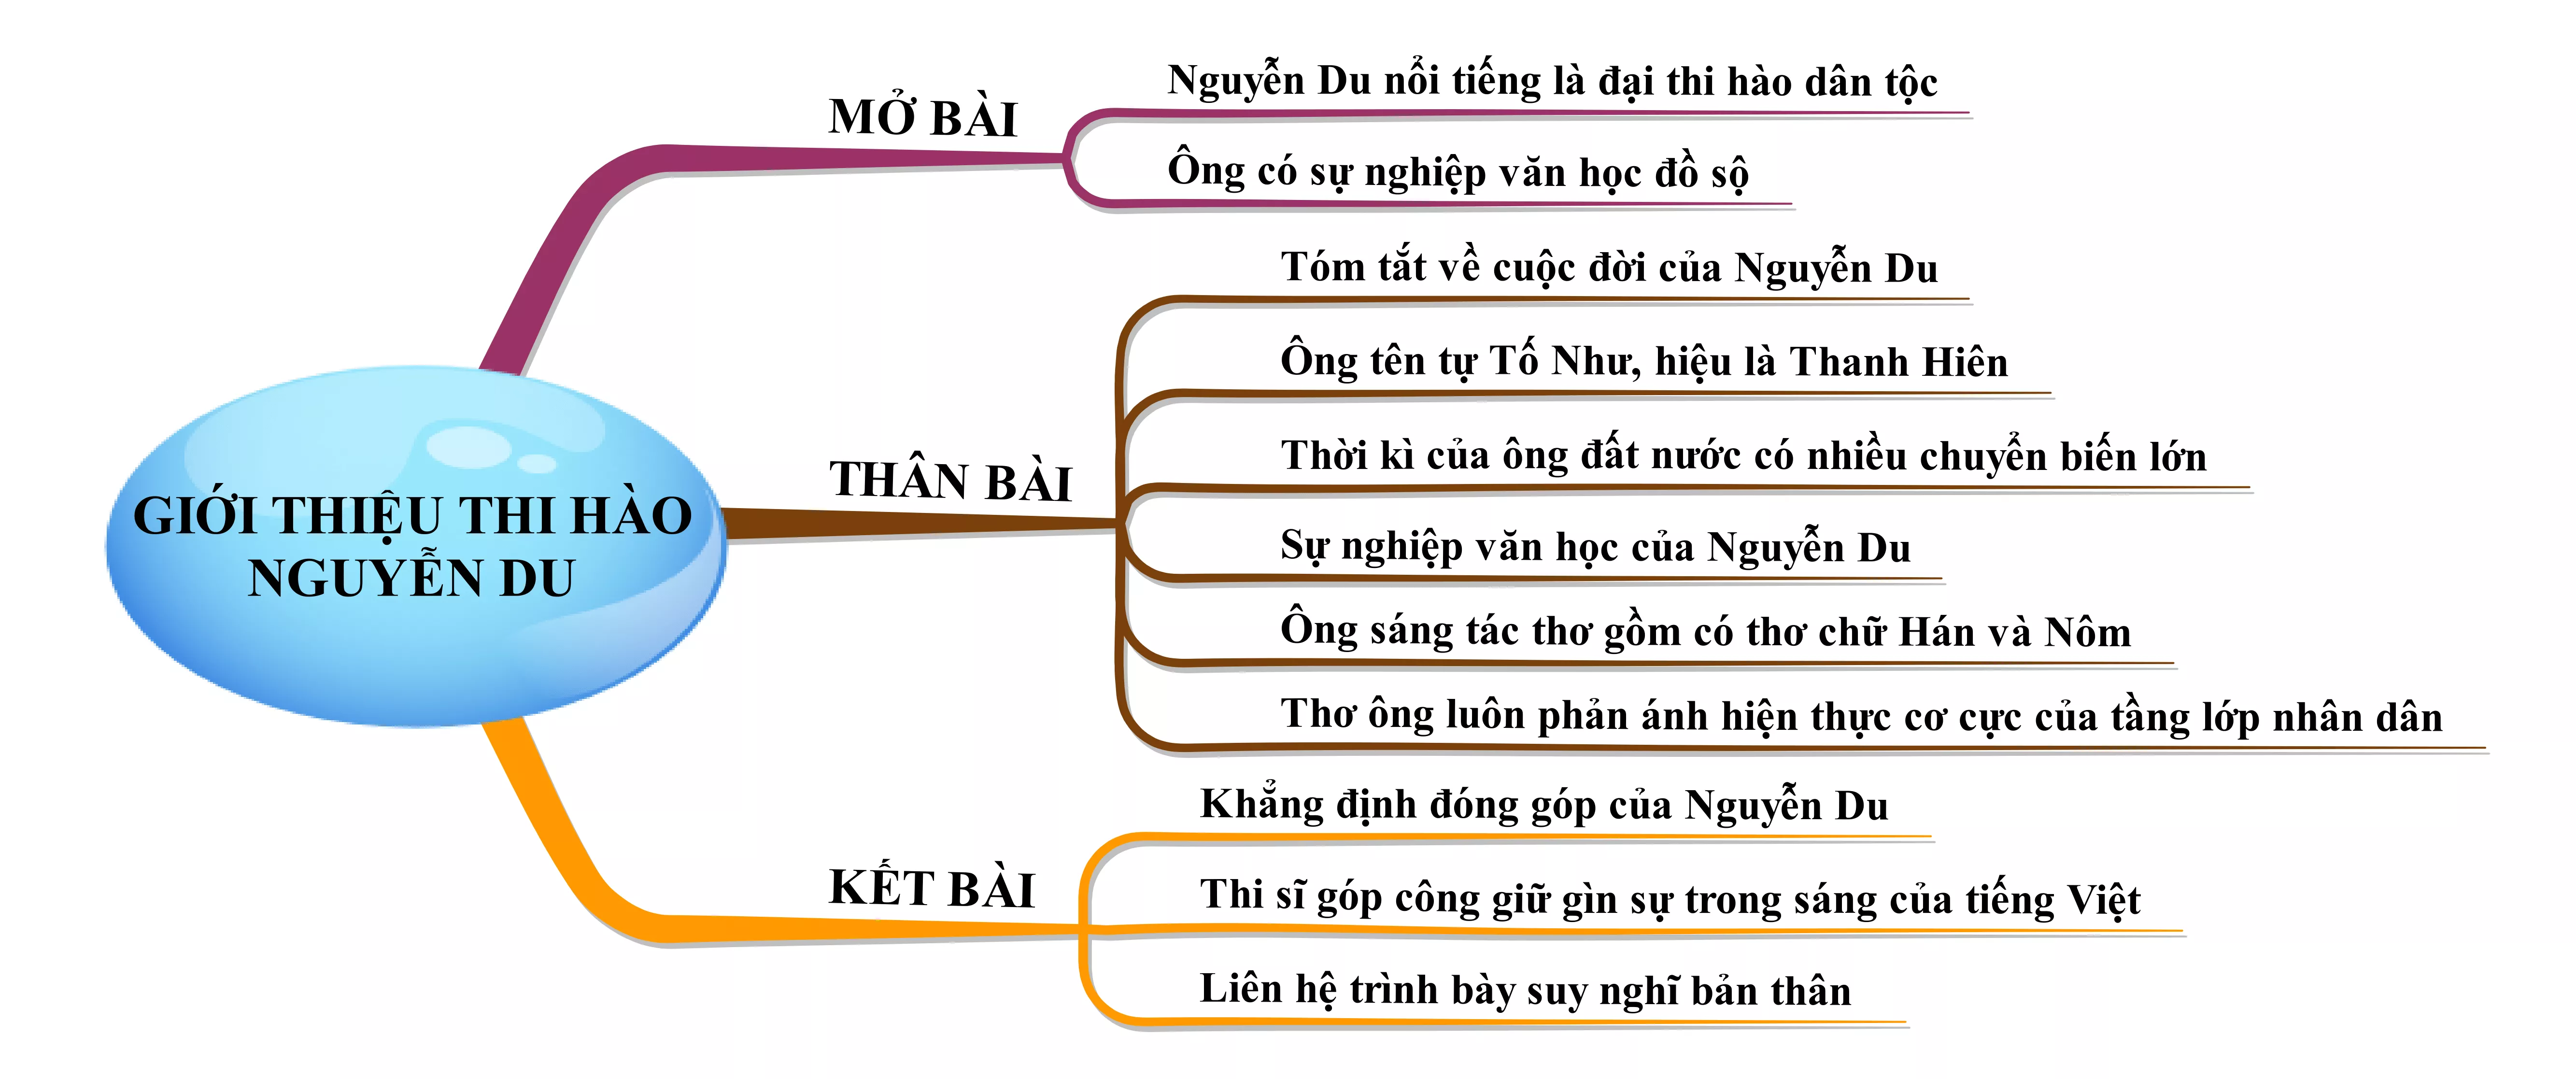 Trình bày những nét chính về tác giả Nguyễn Du năm 2021 Trinh Bay Nhung Net Chinh Ve Tac Gia Nguyen Du Nam 2021 22016